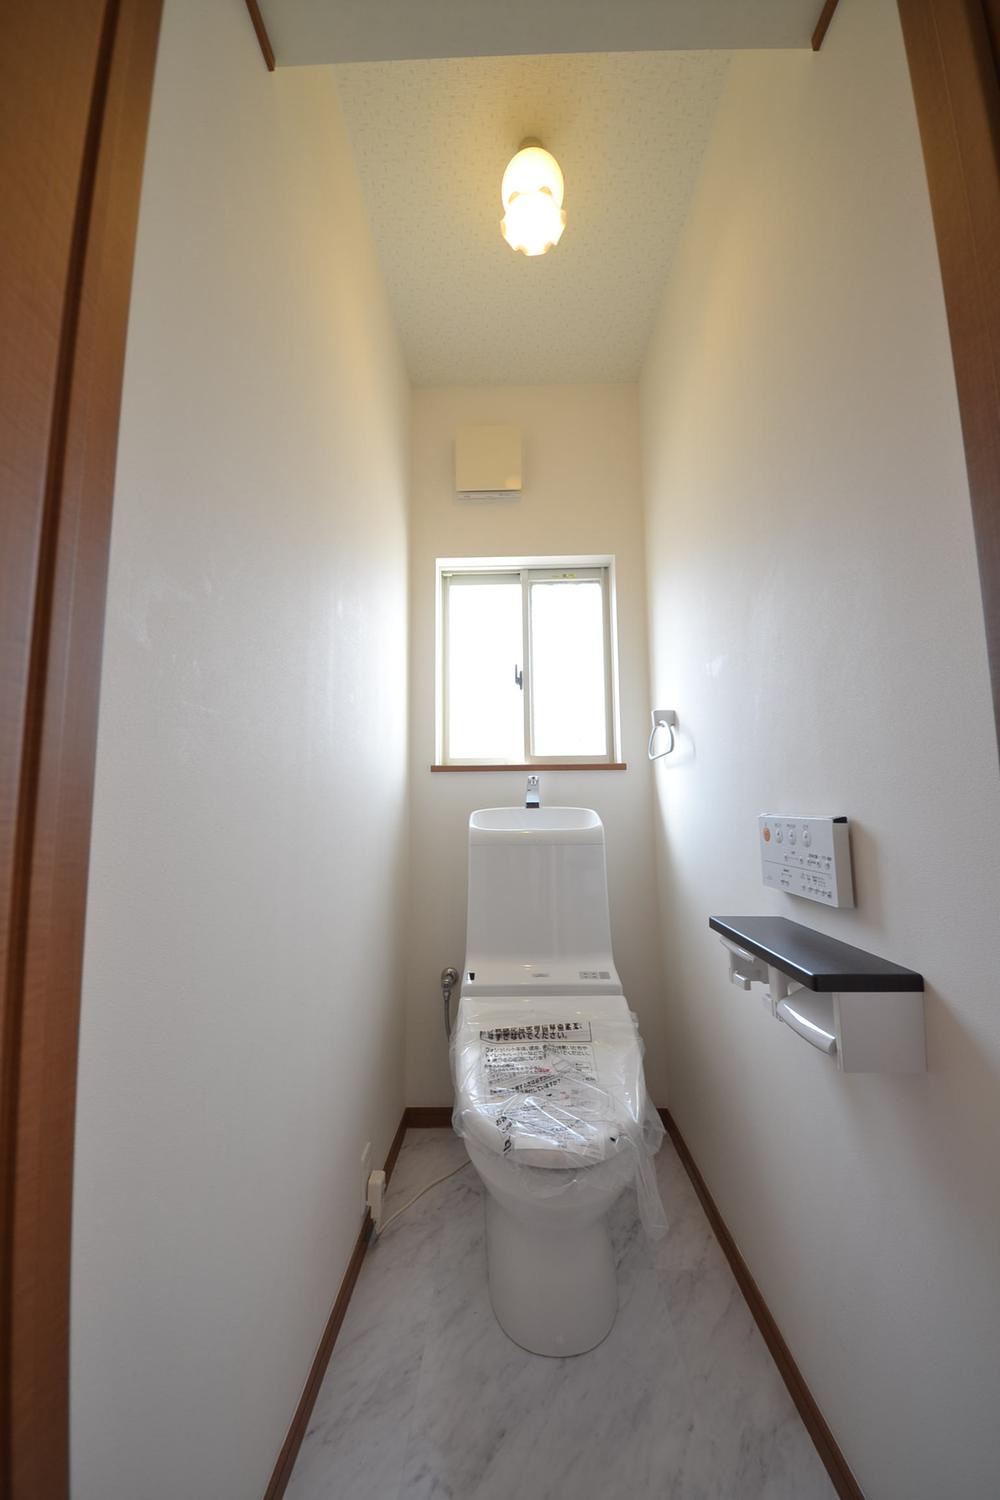 Toilet. Indoor (July 6, 2013) Shooting